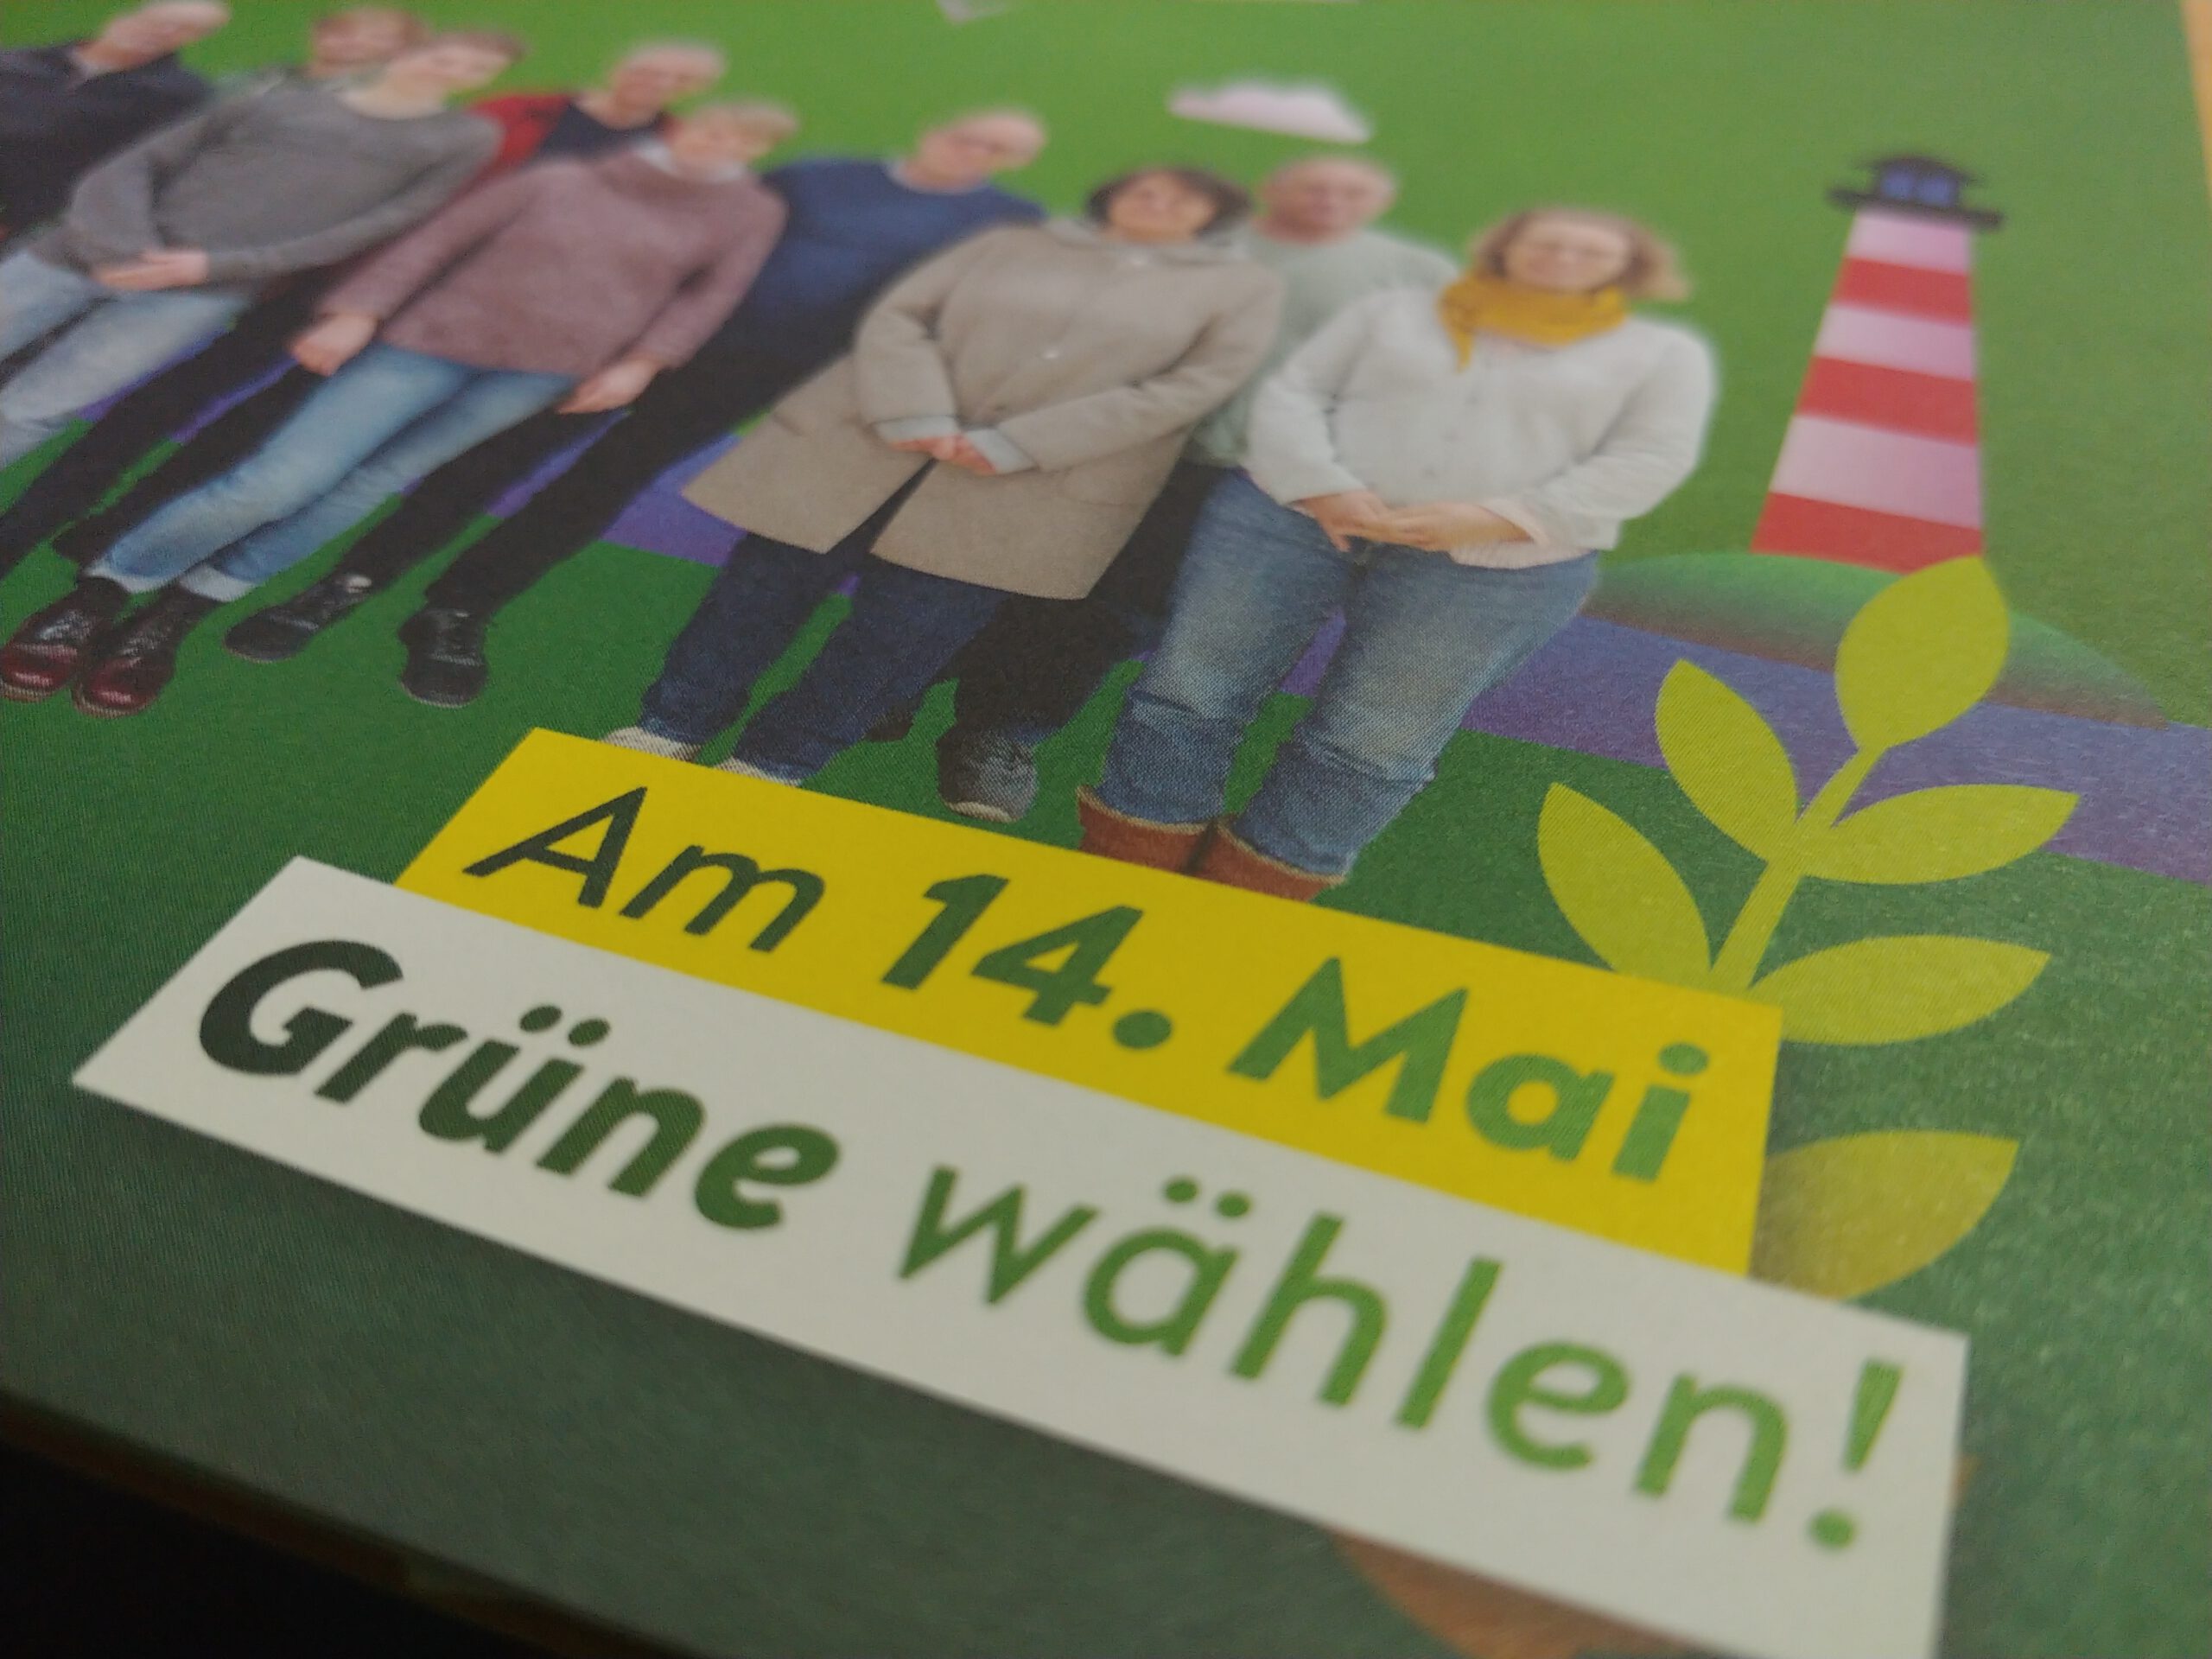 Am 14. Mai Grüne wählen!